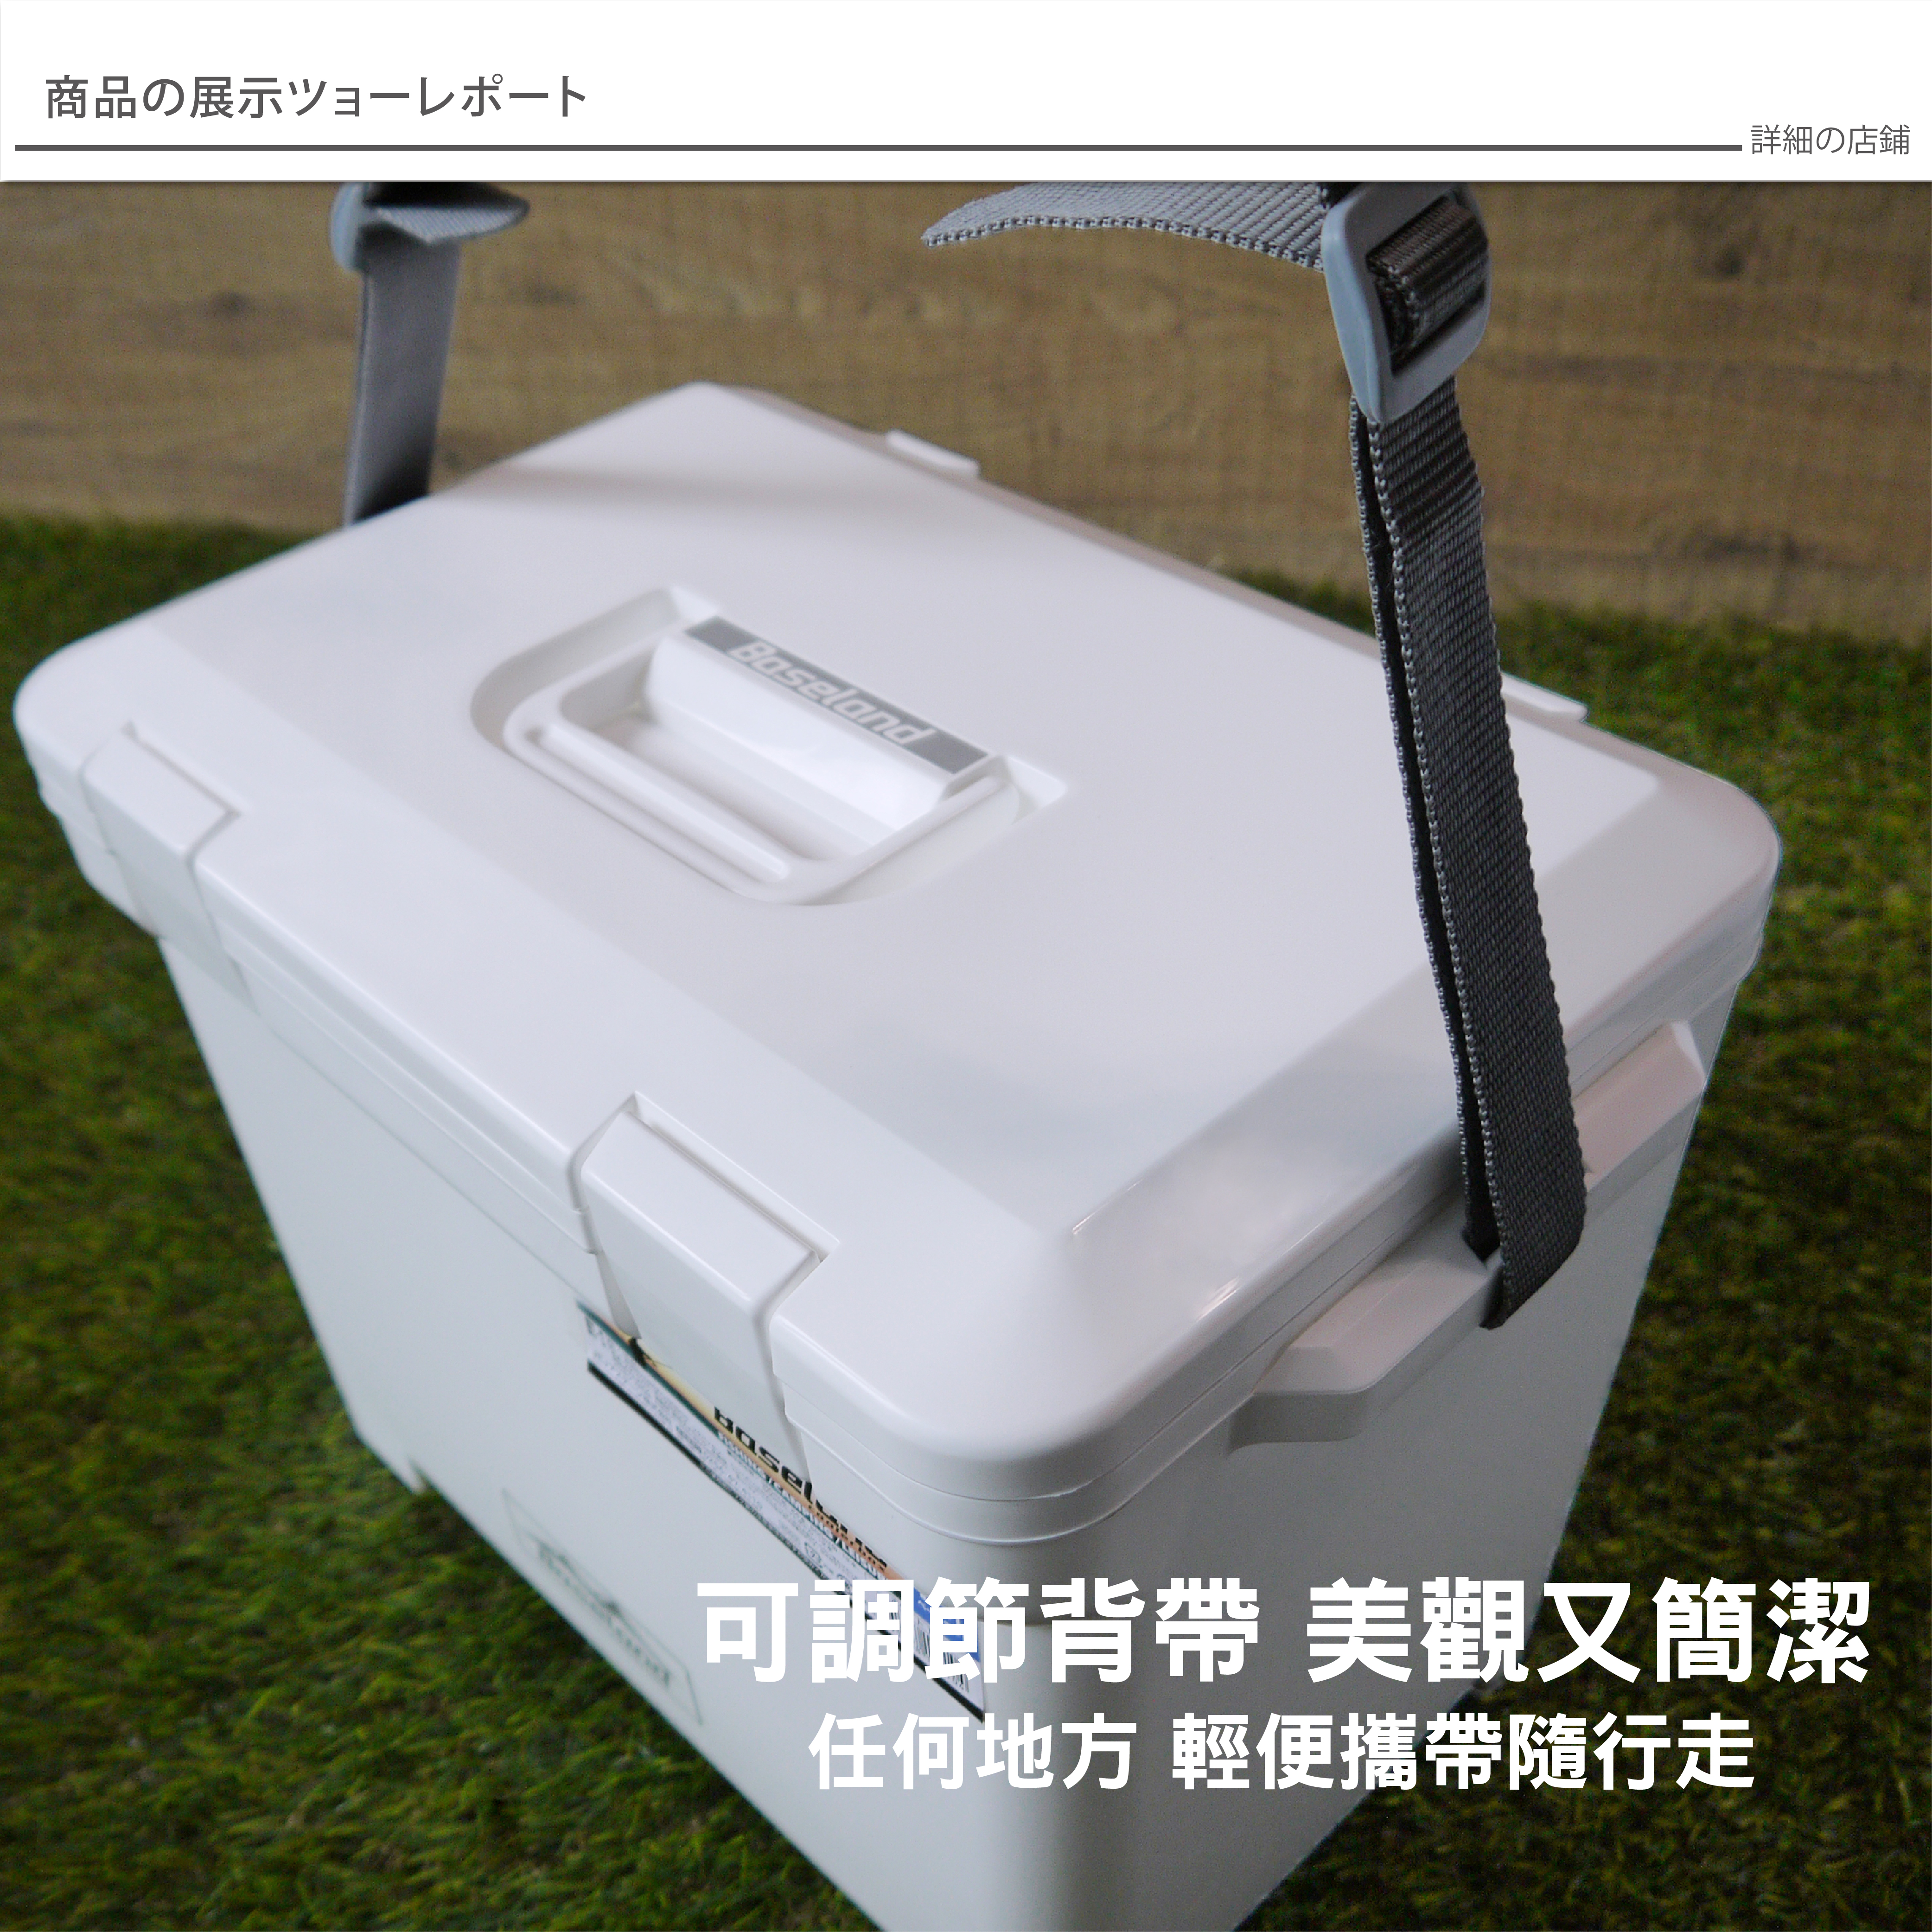 BASELAND 日本製 專業保溫冰桶 35L / 白色